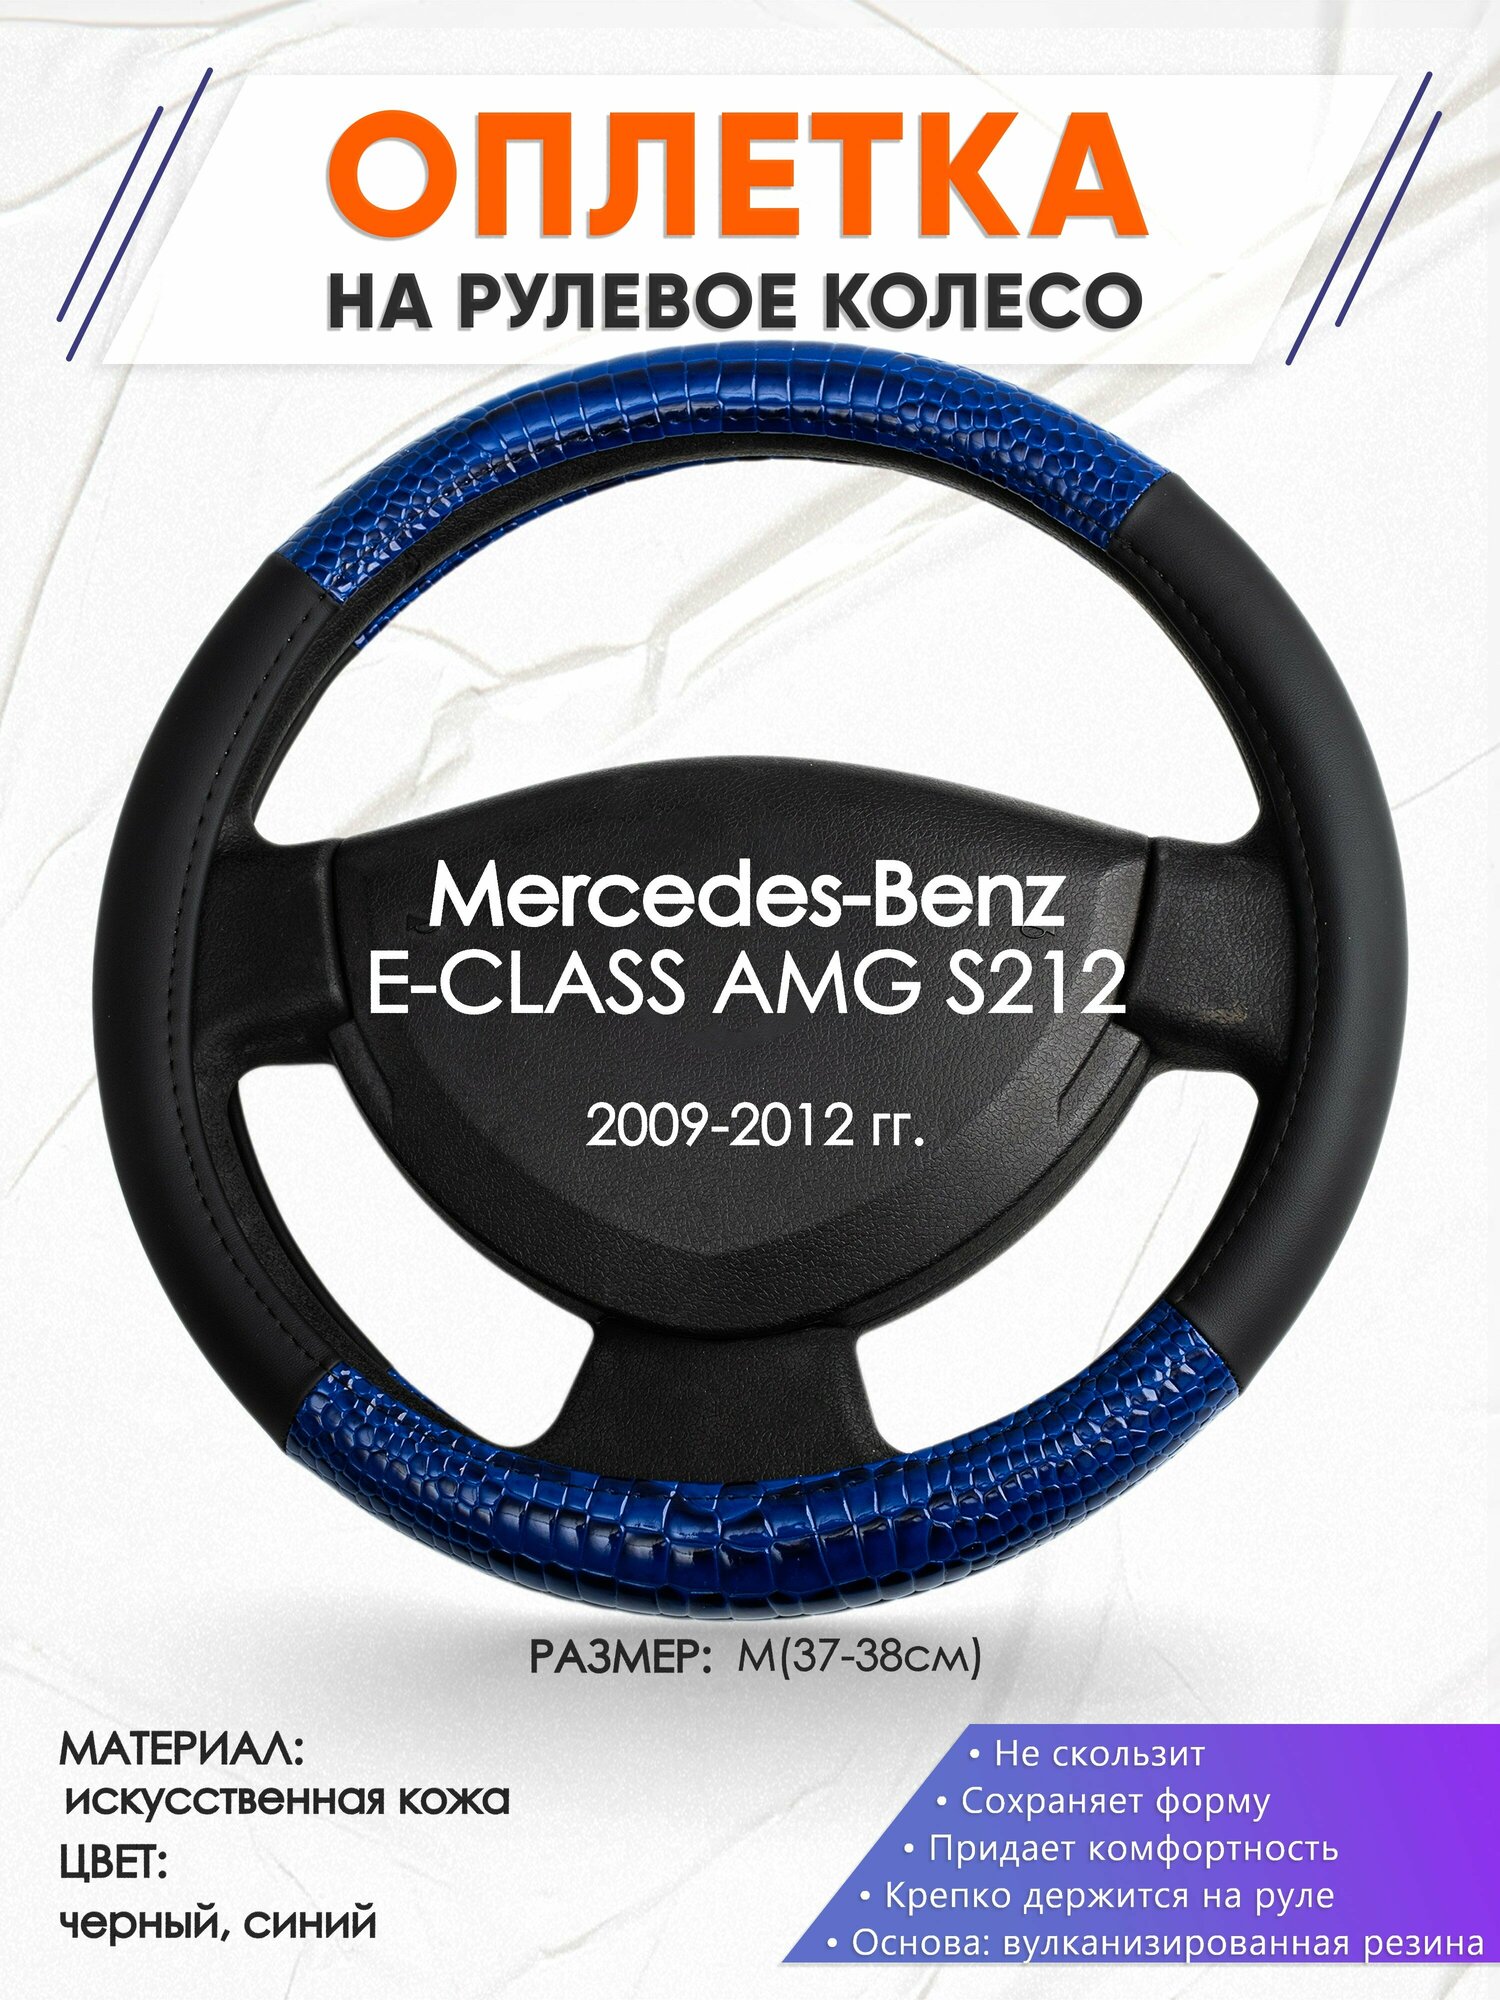 Оплетка наруль для Mercedes-Benz E-CLASS AMG S212(Мерседес Бенц Е Класс) 2009-2012 годов выпуска, размер M(37-38см), Искусственная кожа 82